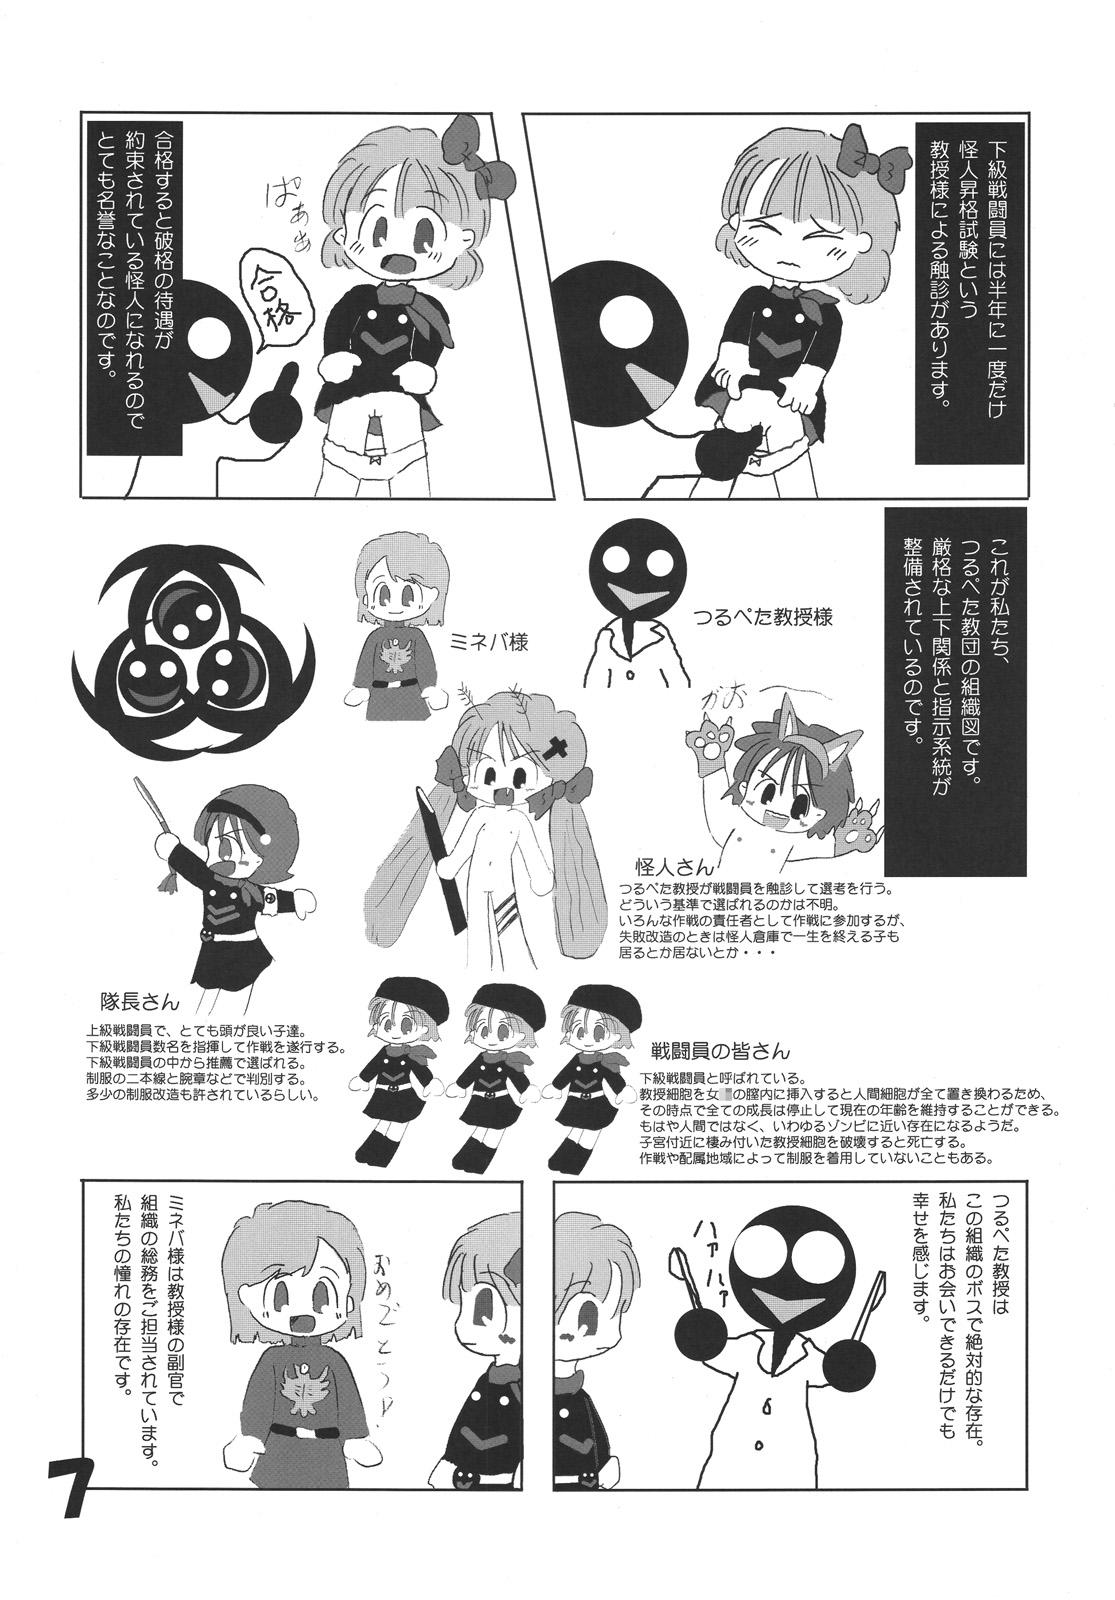 Vintage Tsurupeta Kenkyuu Houkokusho "Kakyuu Sentou In no Isshou" - Turupeta Research Report Gang - Page 6